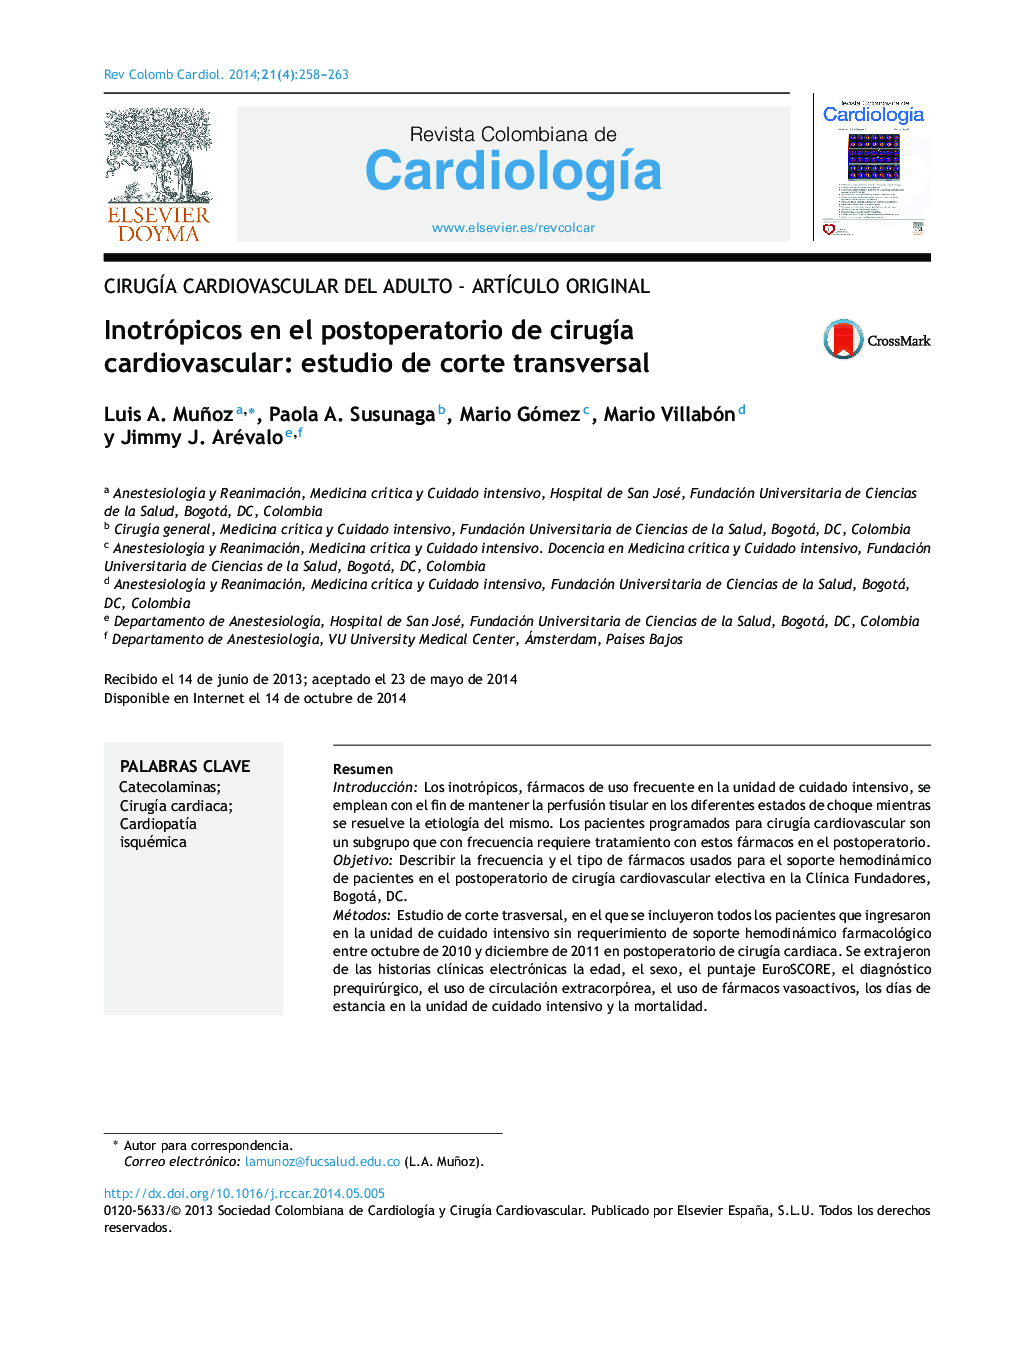 Inotrópicos en el postoperatorio de cirugía cardiovascular: estudio de corte transversal